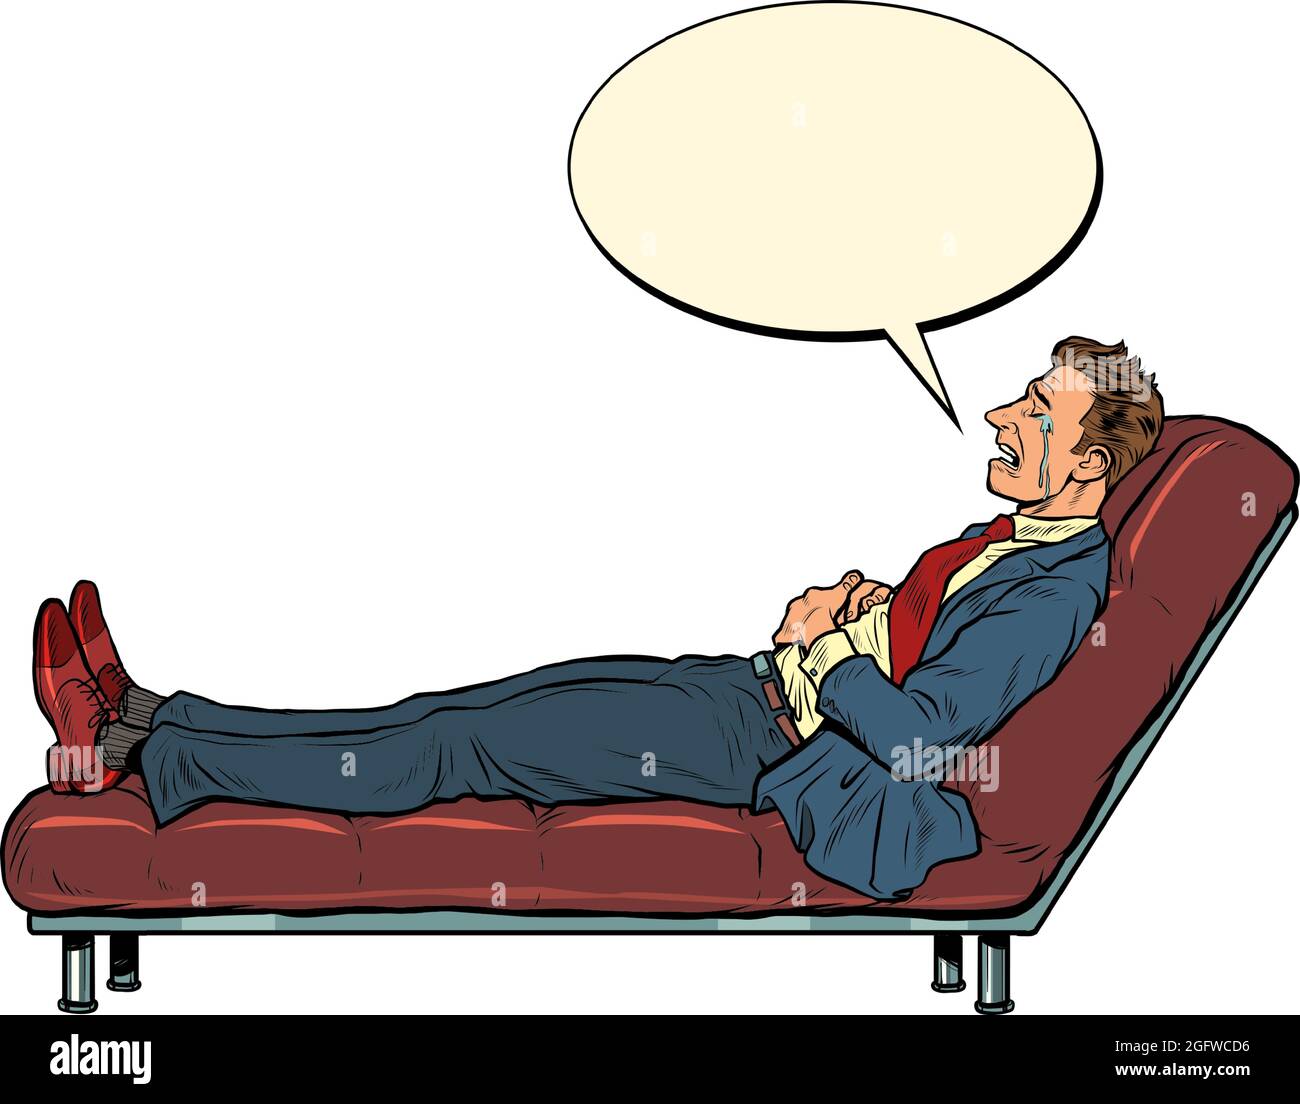 Le patient est un homme d'affaires à une séance de psychothérapie, allongé sur le canapé Illustration de Vecteur